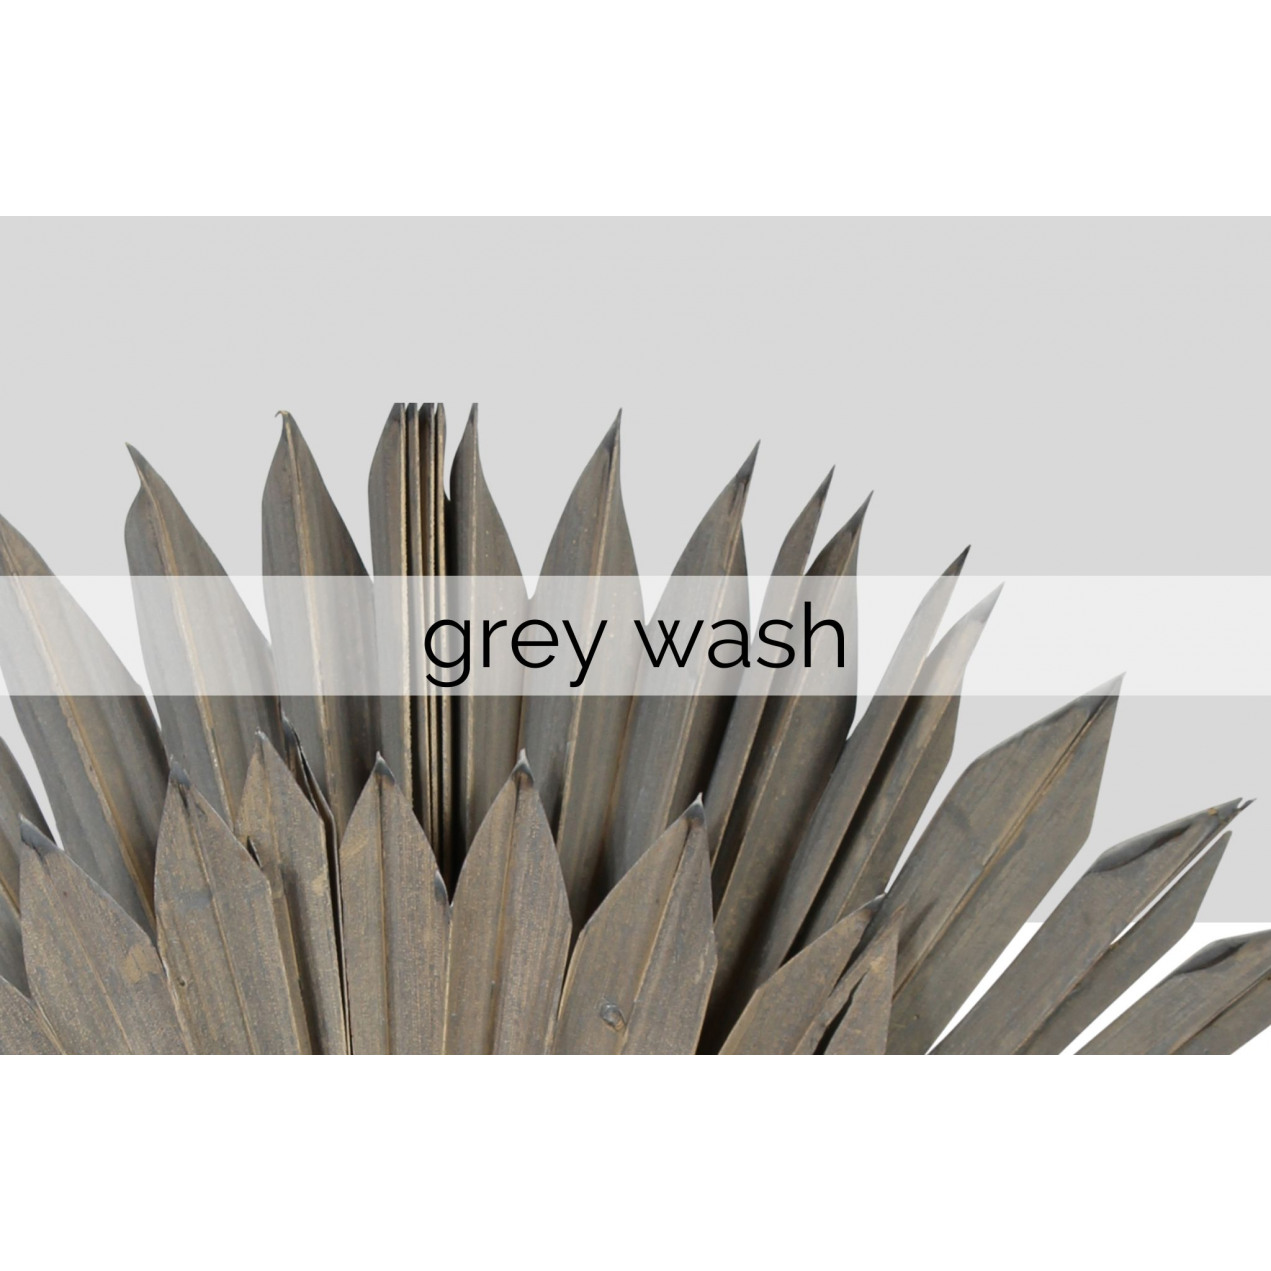 grey wash